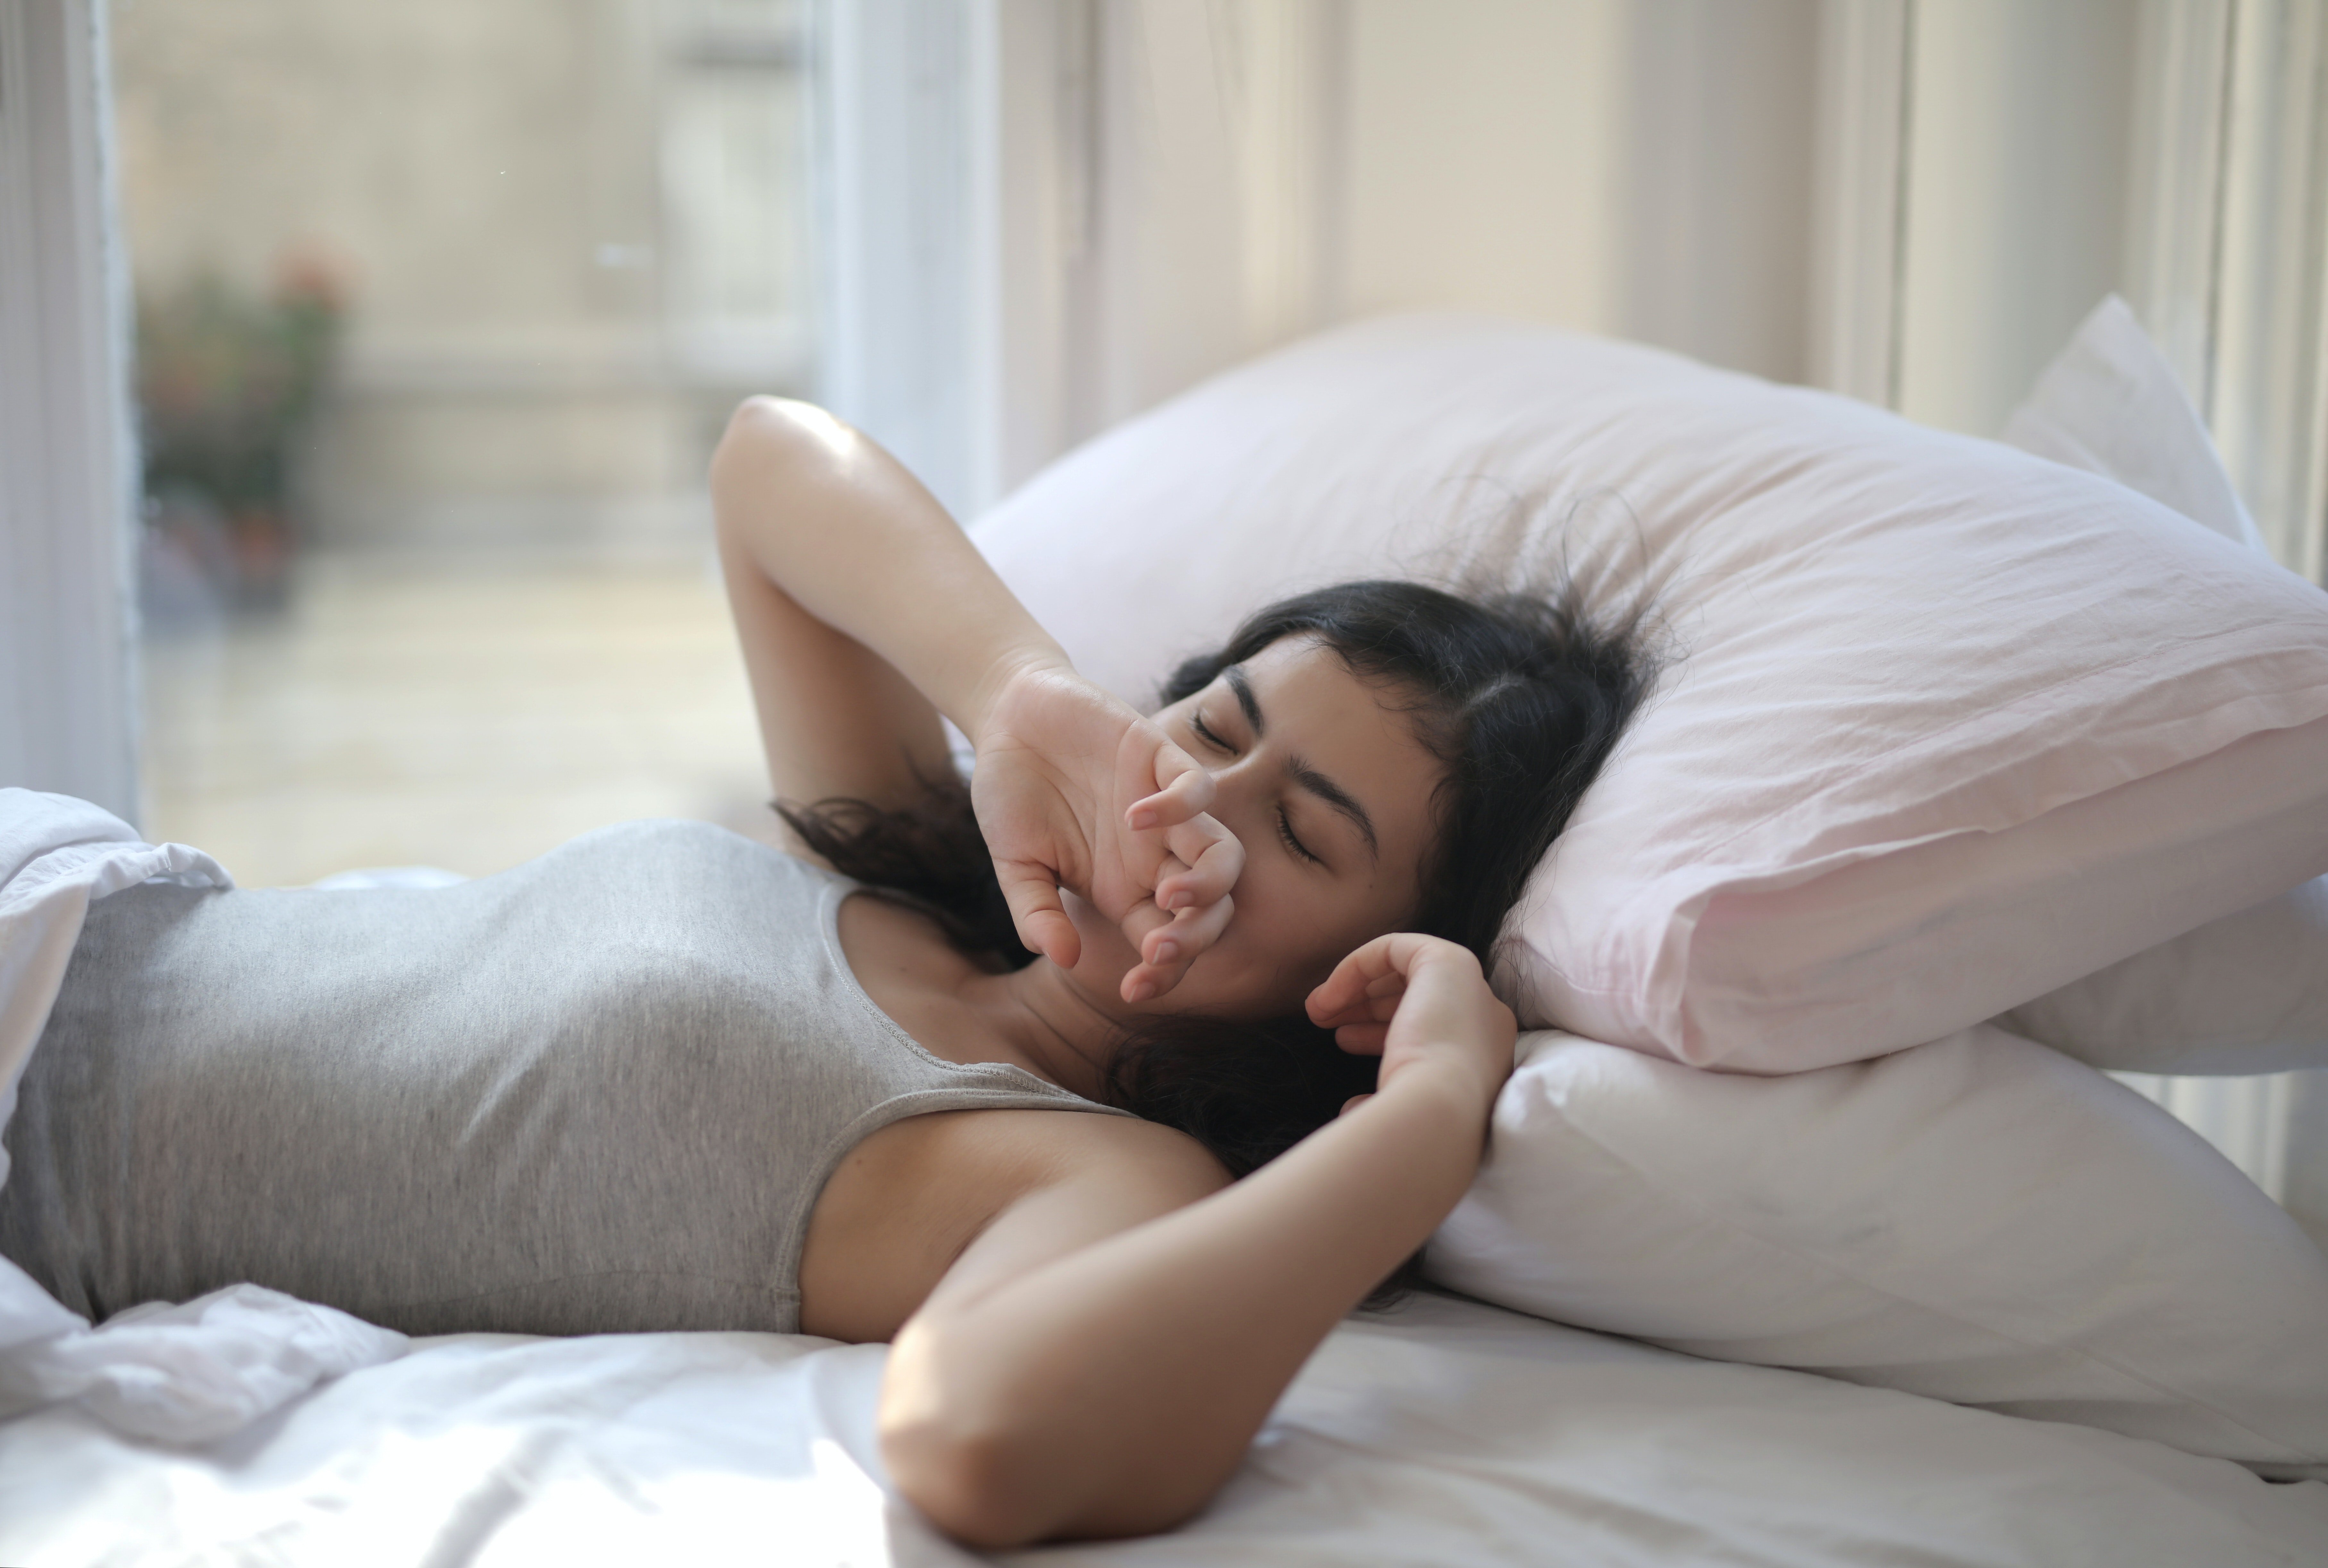 Verschlafene Frau in grauem Tanktop auf dem Bett liegend | Quelle: Pexels